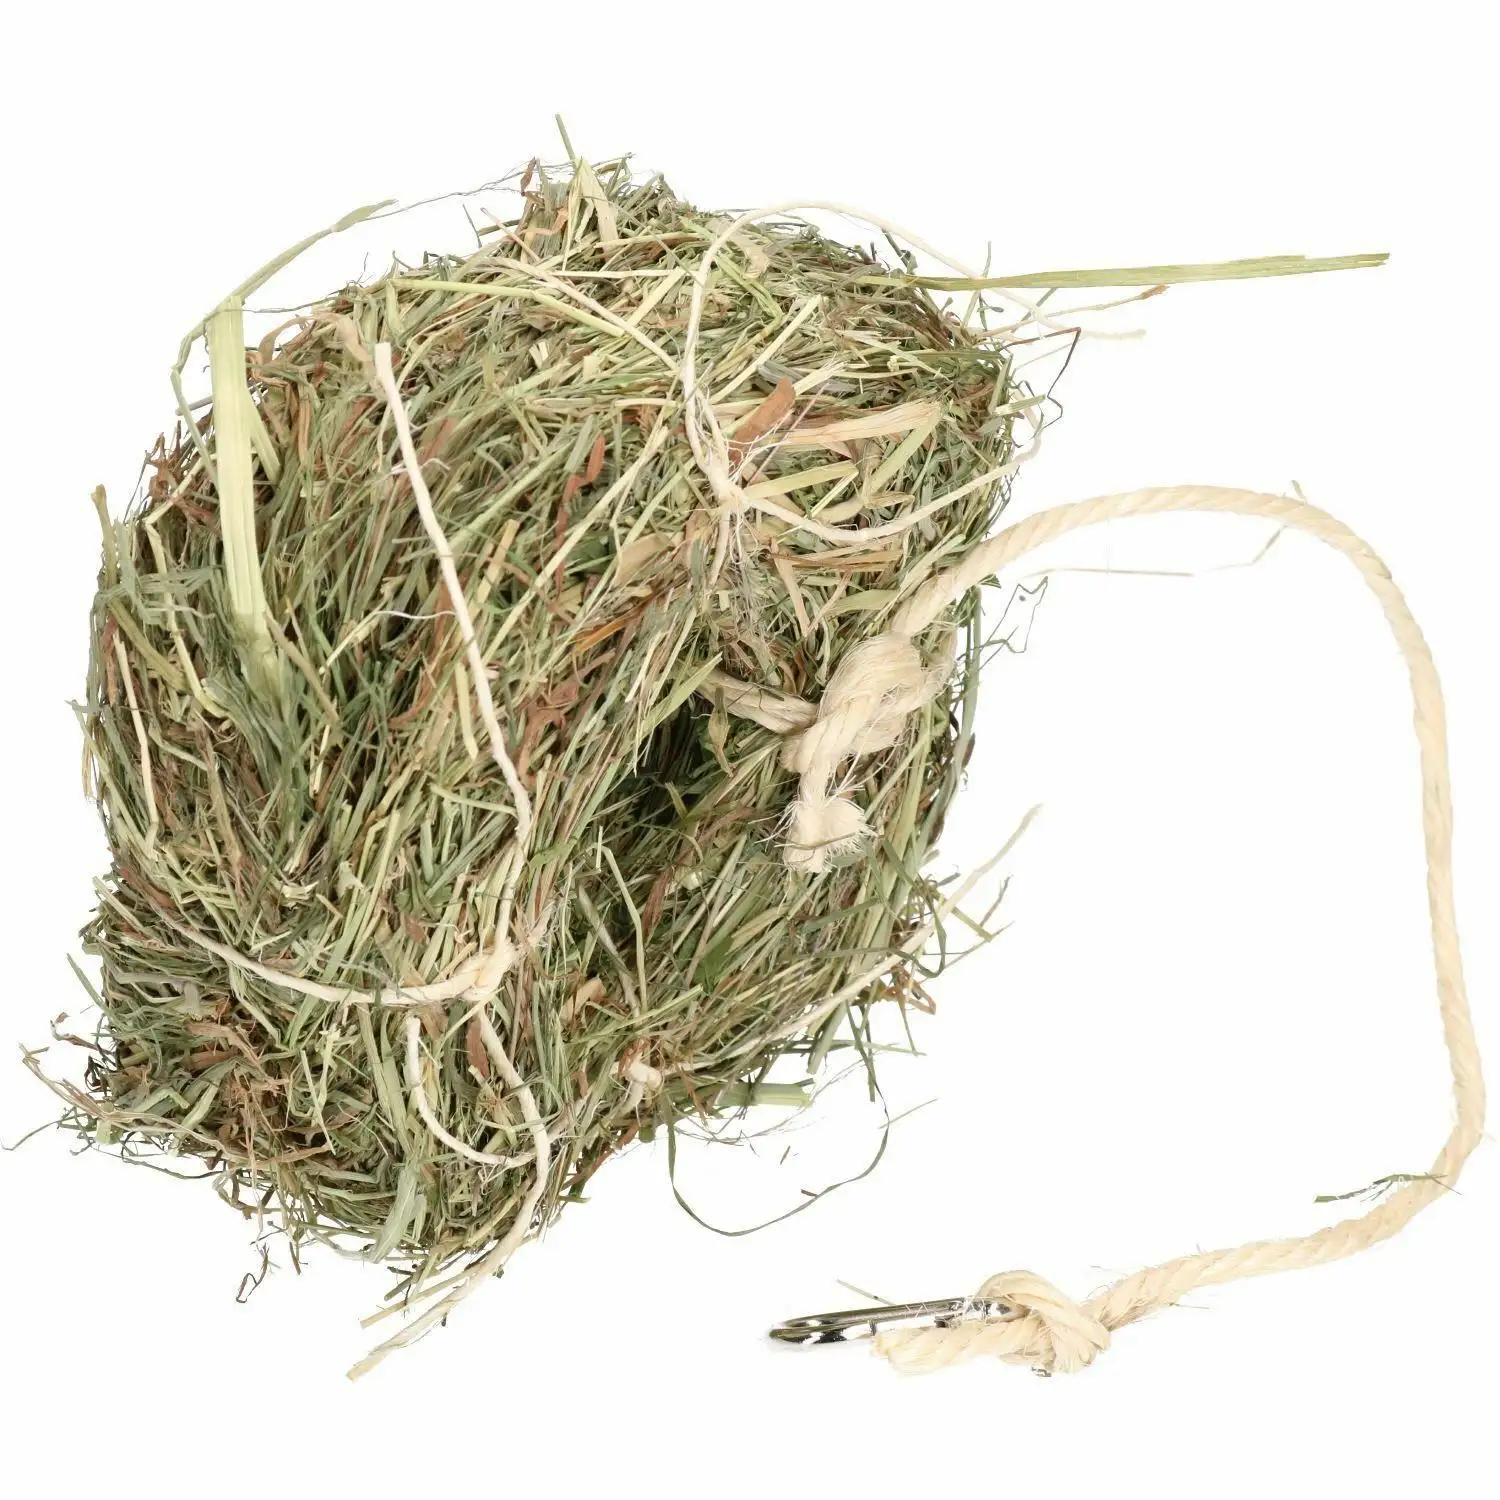 Heno de alfalfa a precio muy barato/Calidad Rhodes Grass Hay Alfalfa